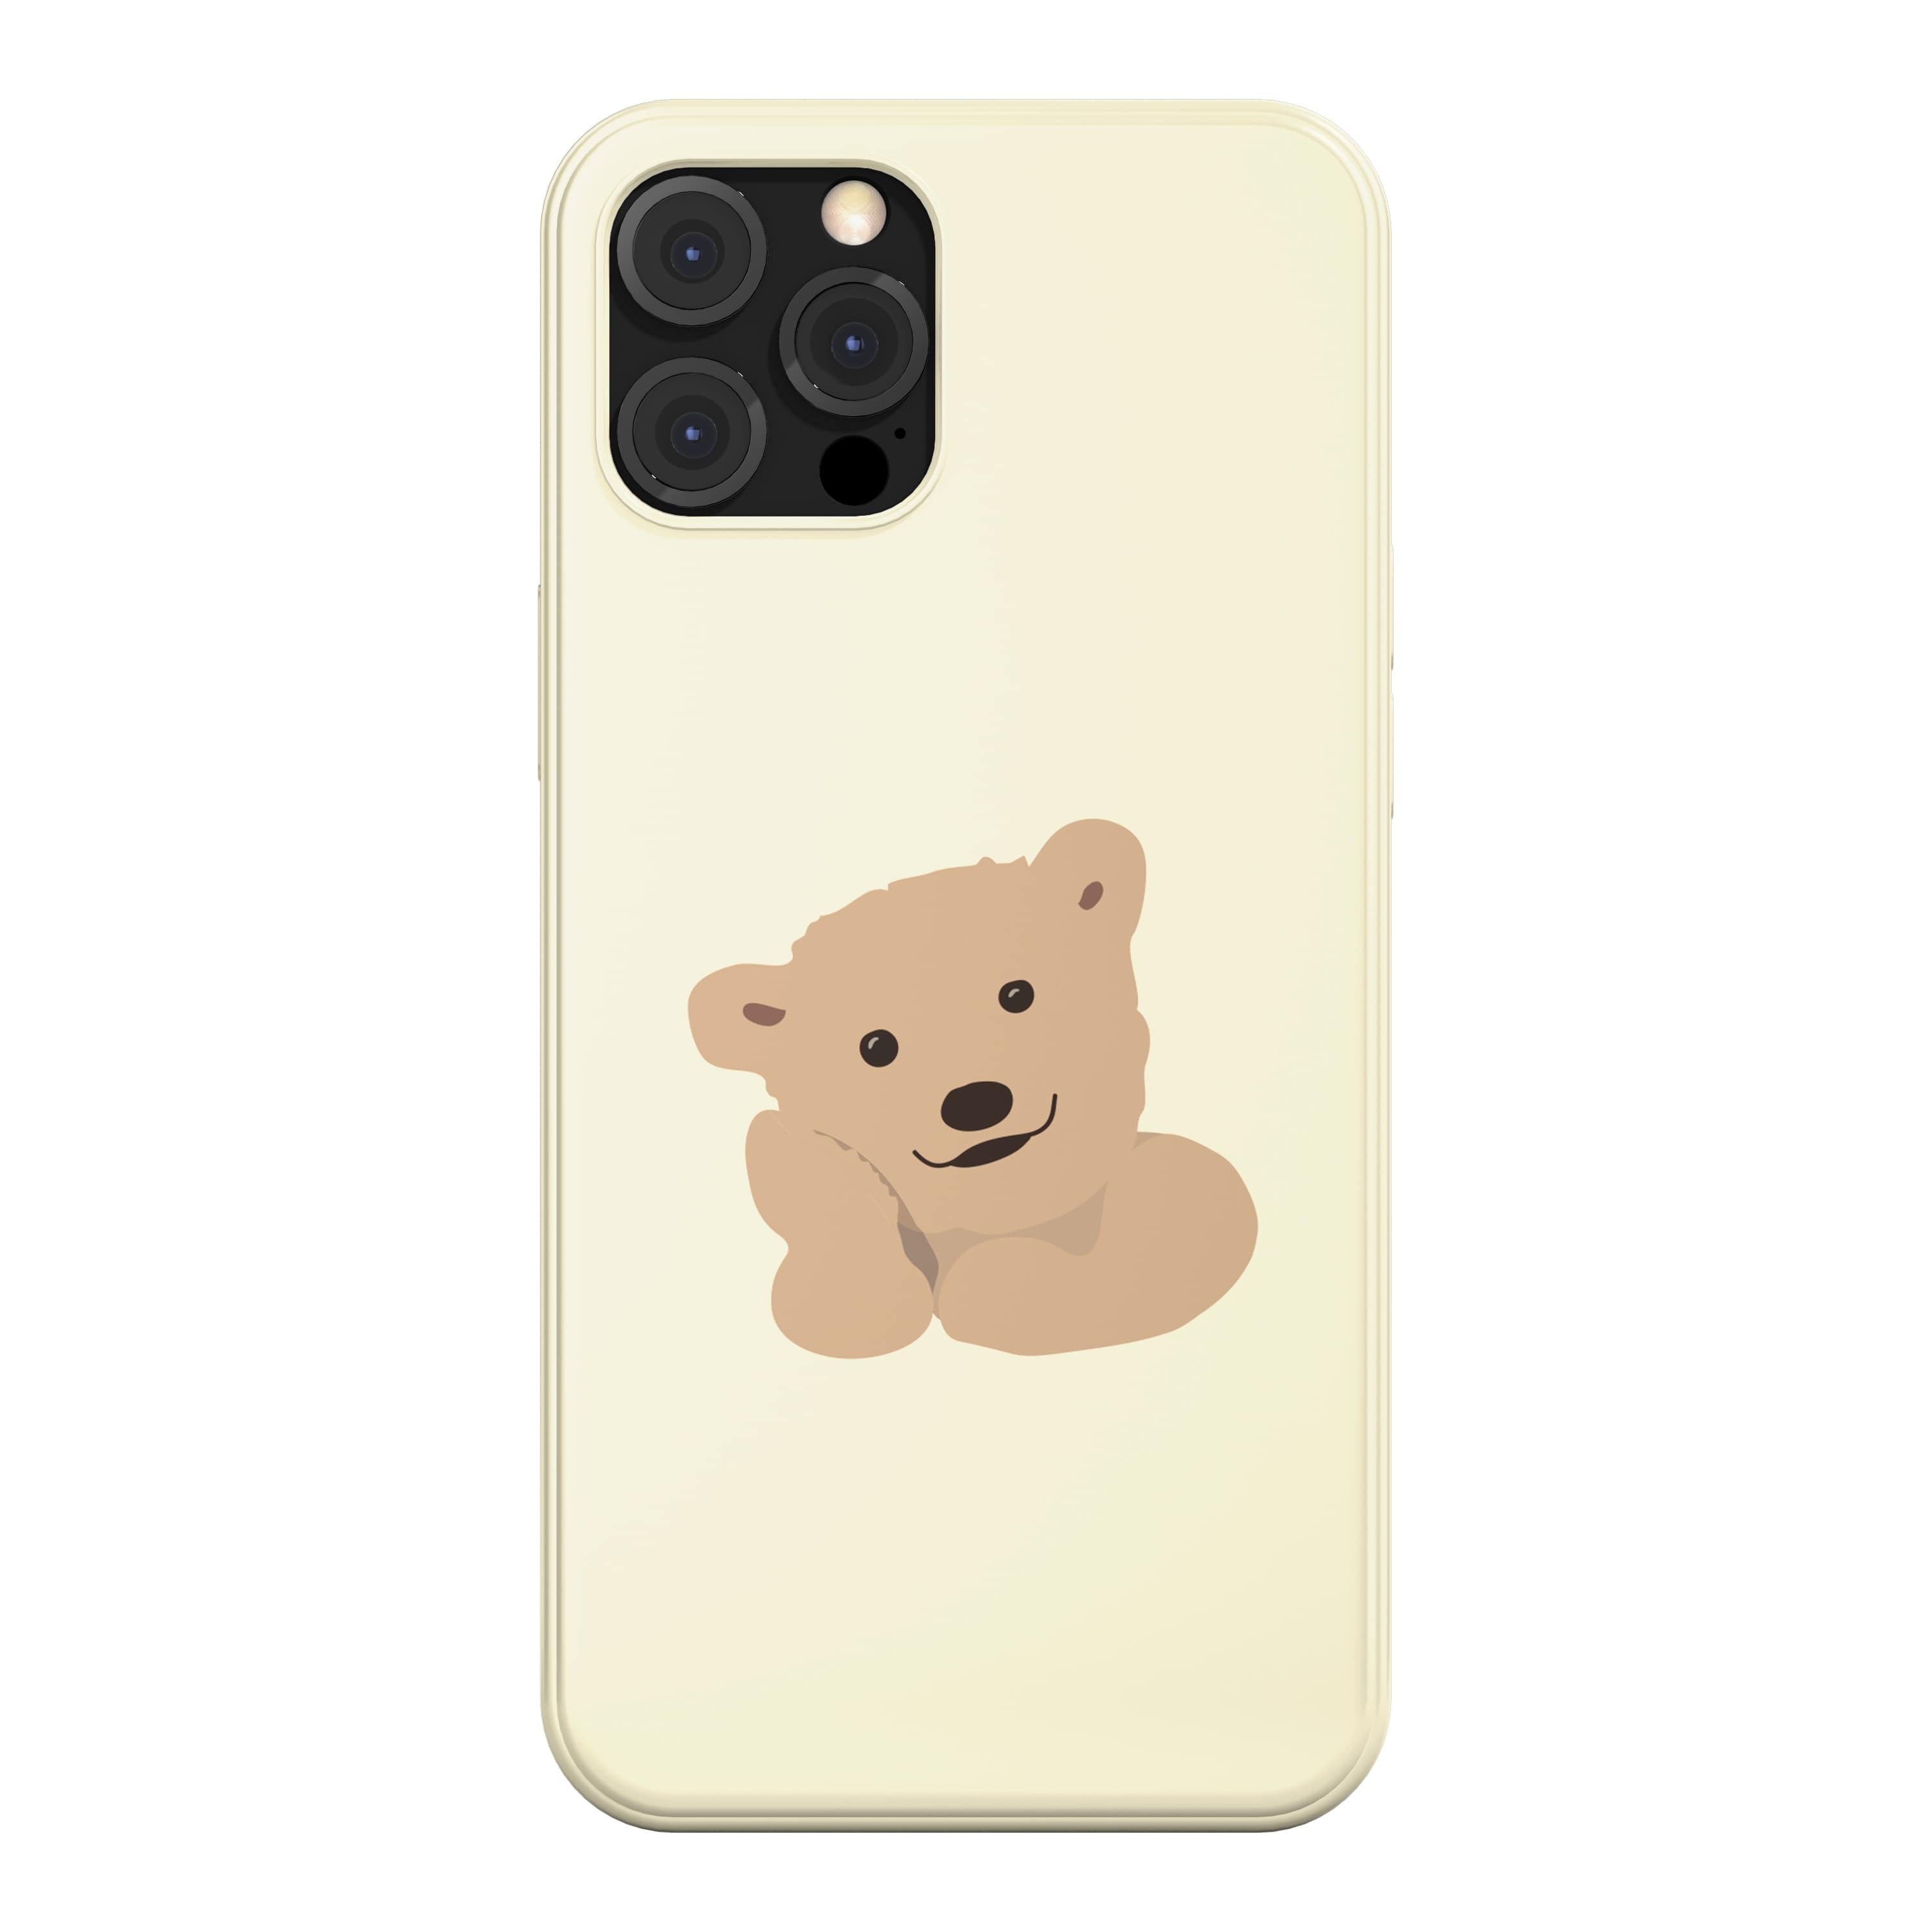 スマホケース Bear かわいい くま イラスト キャラクター 韓国 デザイナーズ Iphone Android 携帯カバー ベアー クリ ム B04 アイフォン Xperia Galaxy 韓国スマホケース専門店 Korean Case